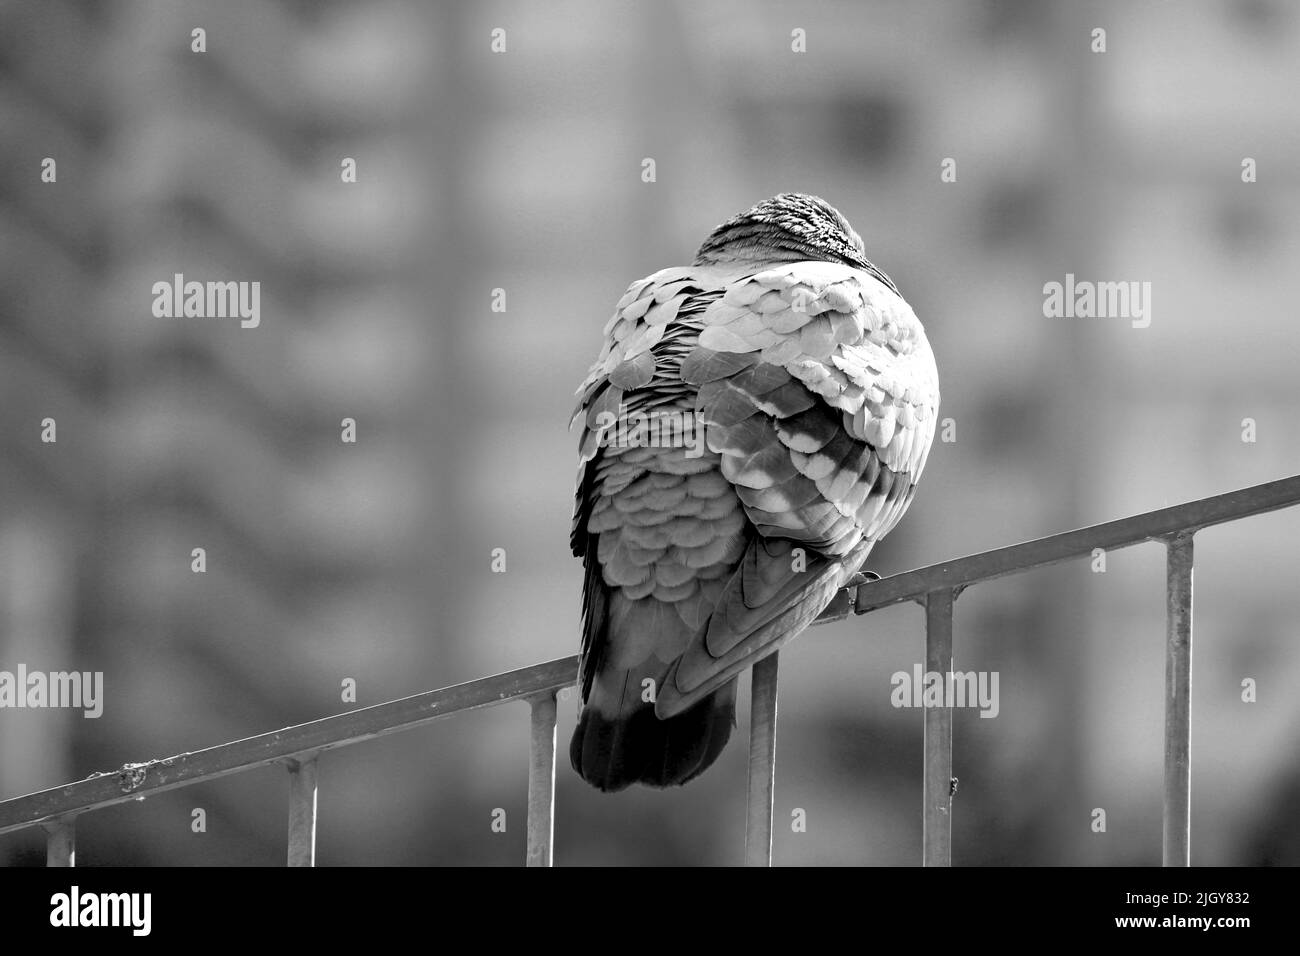 La parte posterior de una paloma en la barandilla de las escaleras que infla sus alas y resiste el frío del invierno Foto de stock